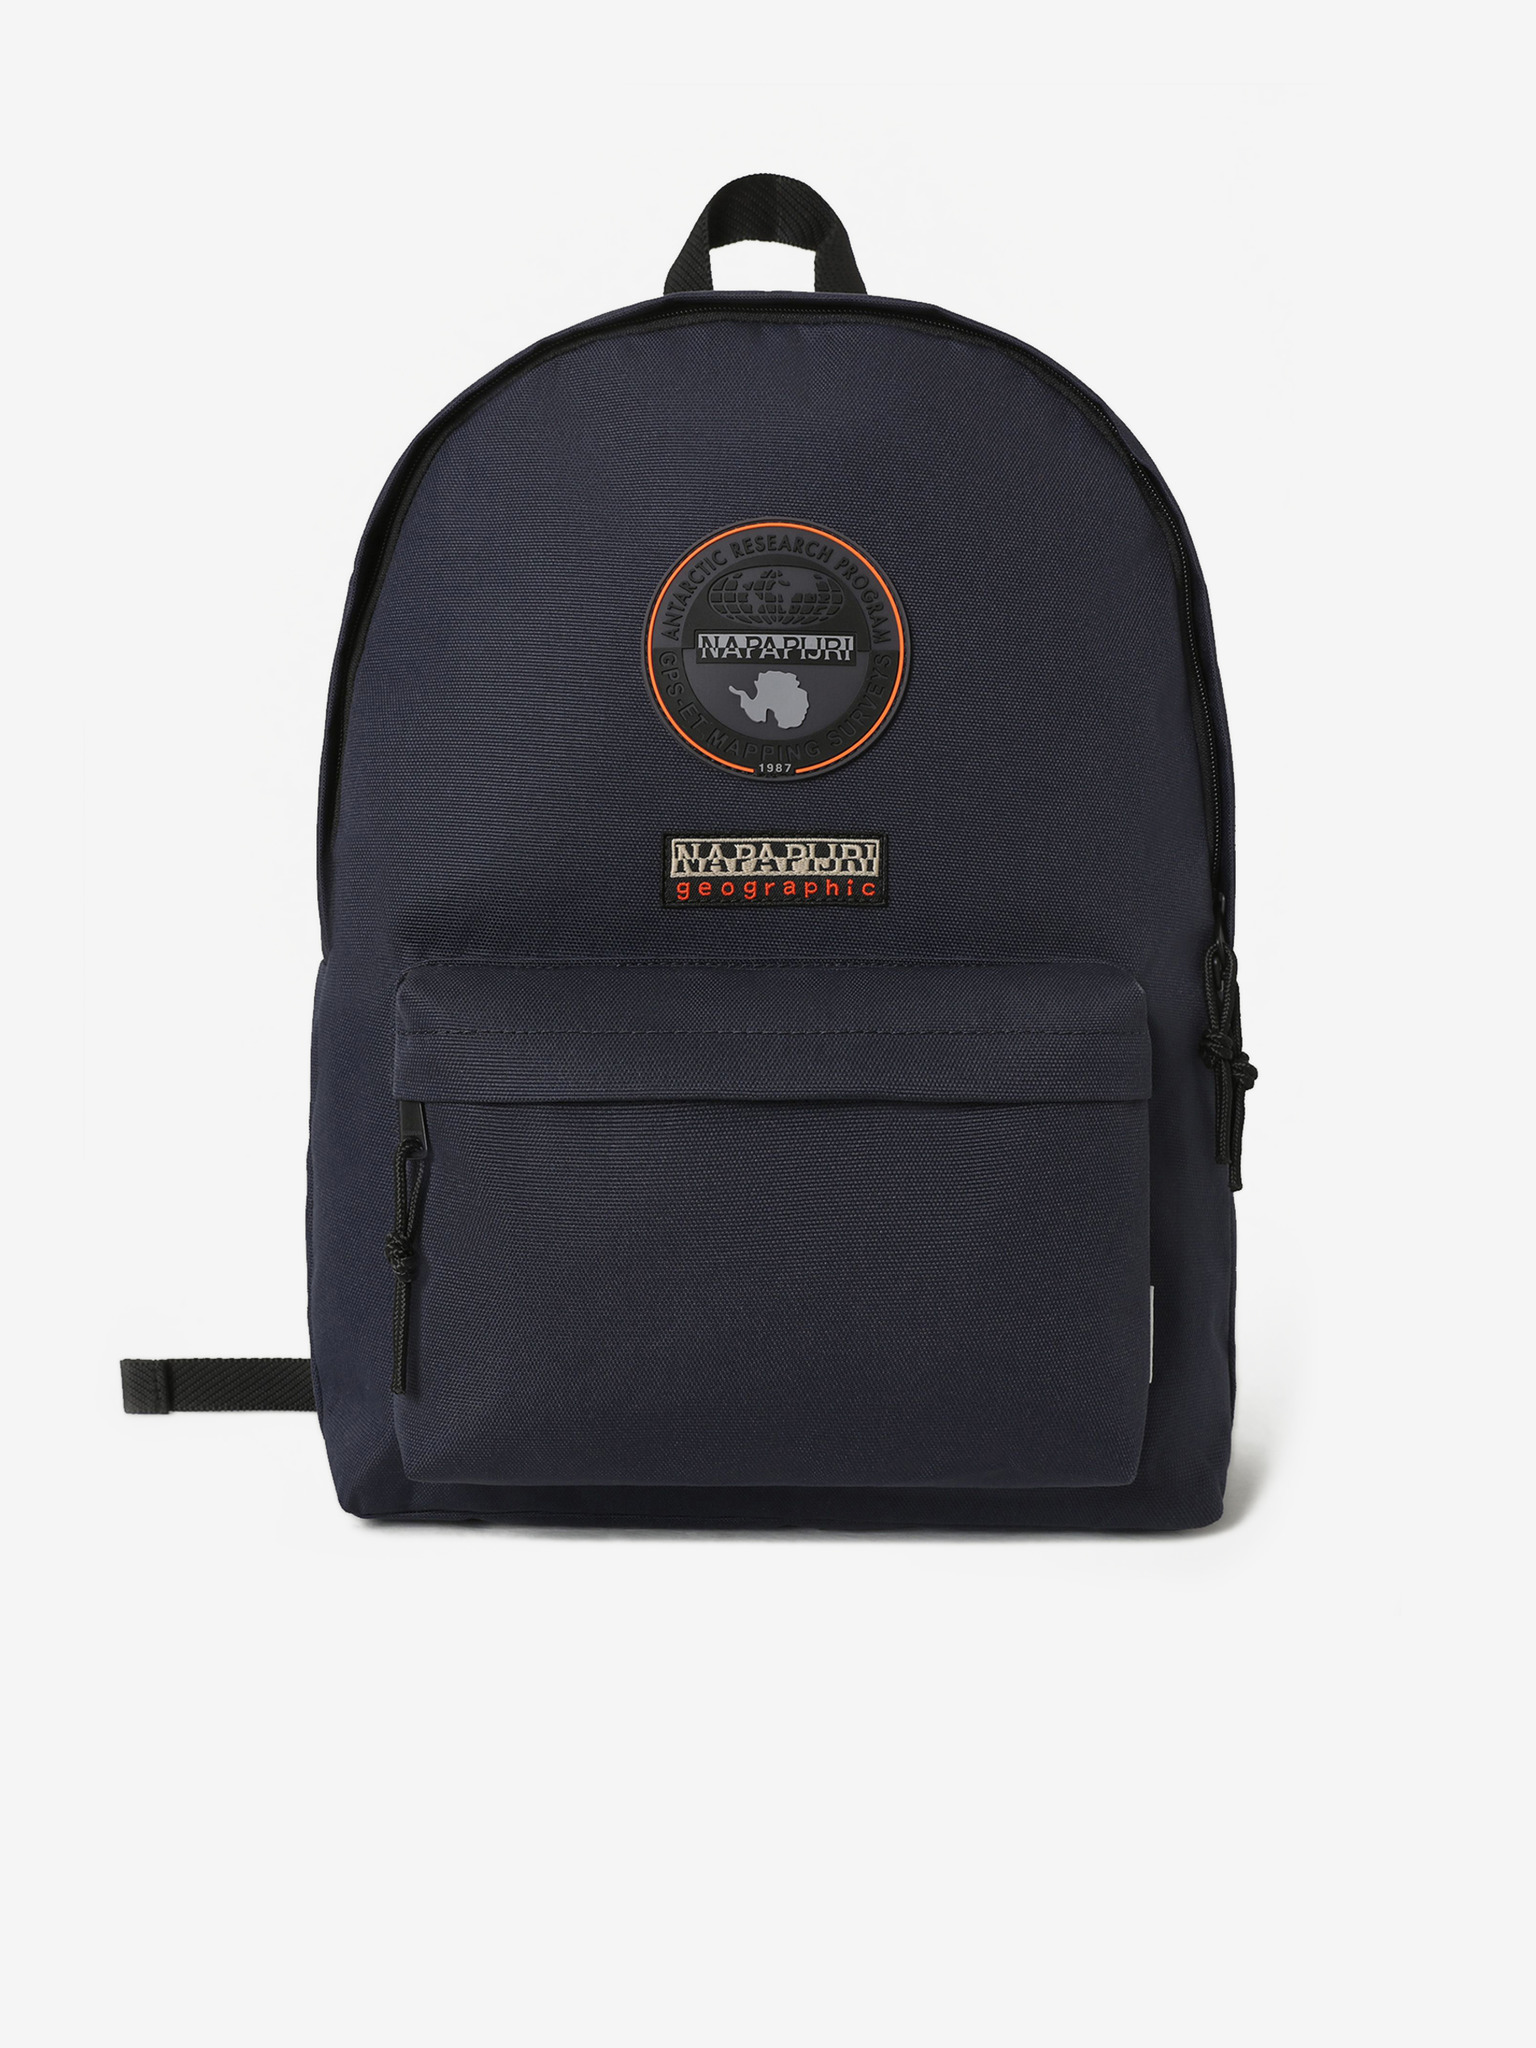 Napapijri Sporta tote bag in black | ASOS | Bags, Reusable shopping tote,  Gym bag